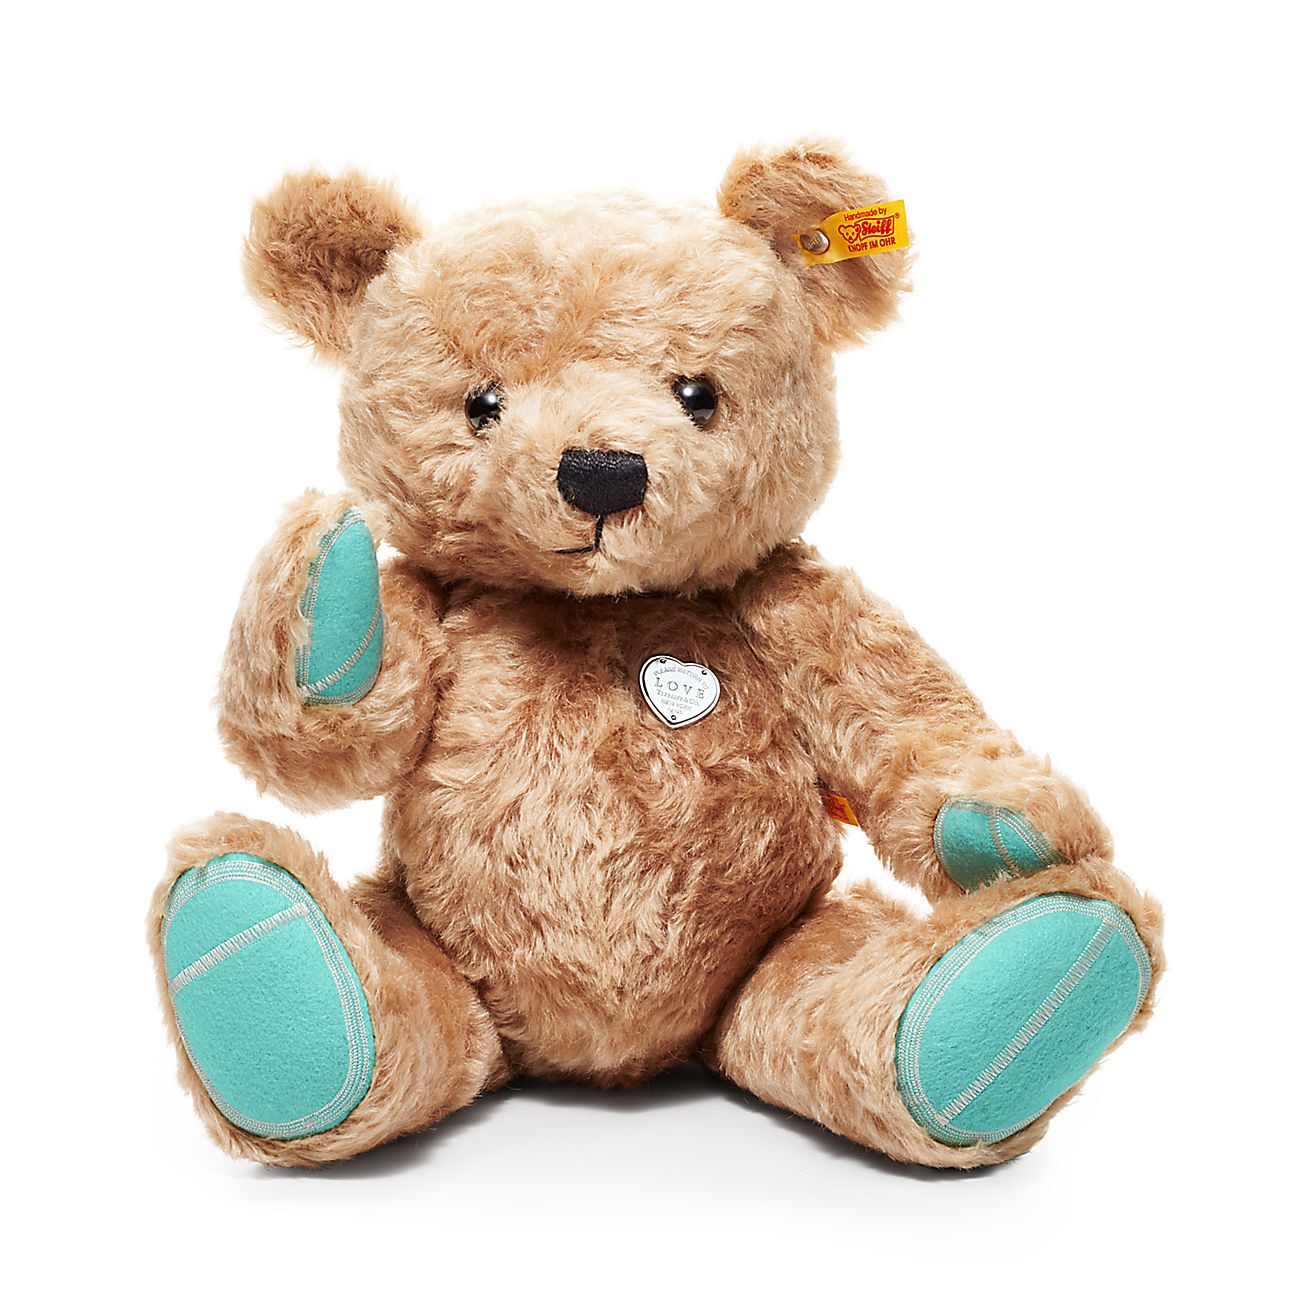 Bear teddy Teddy bears